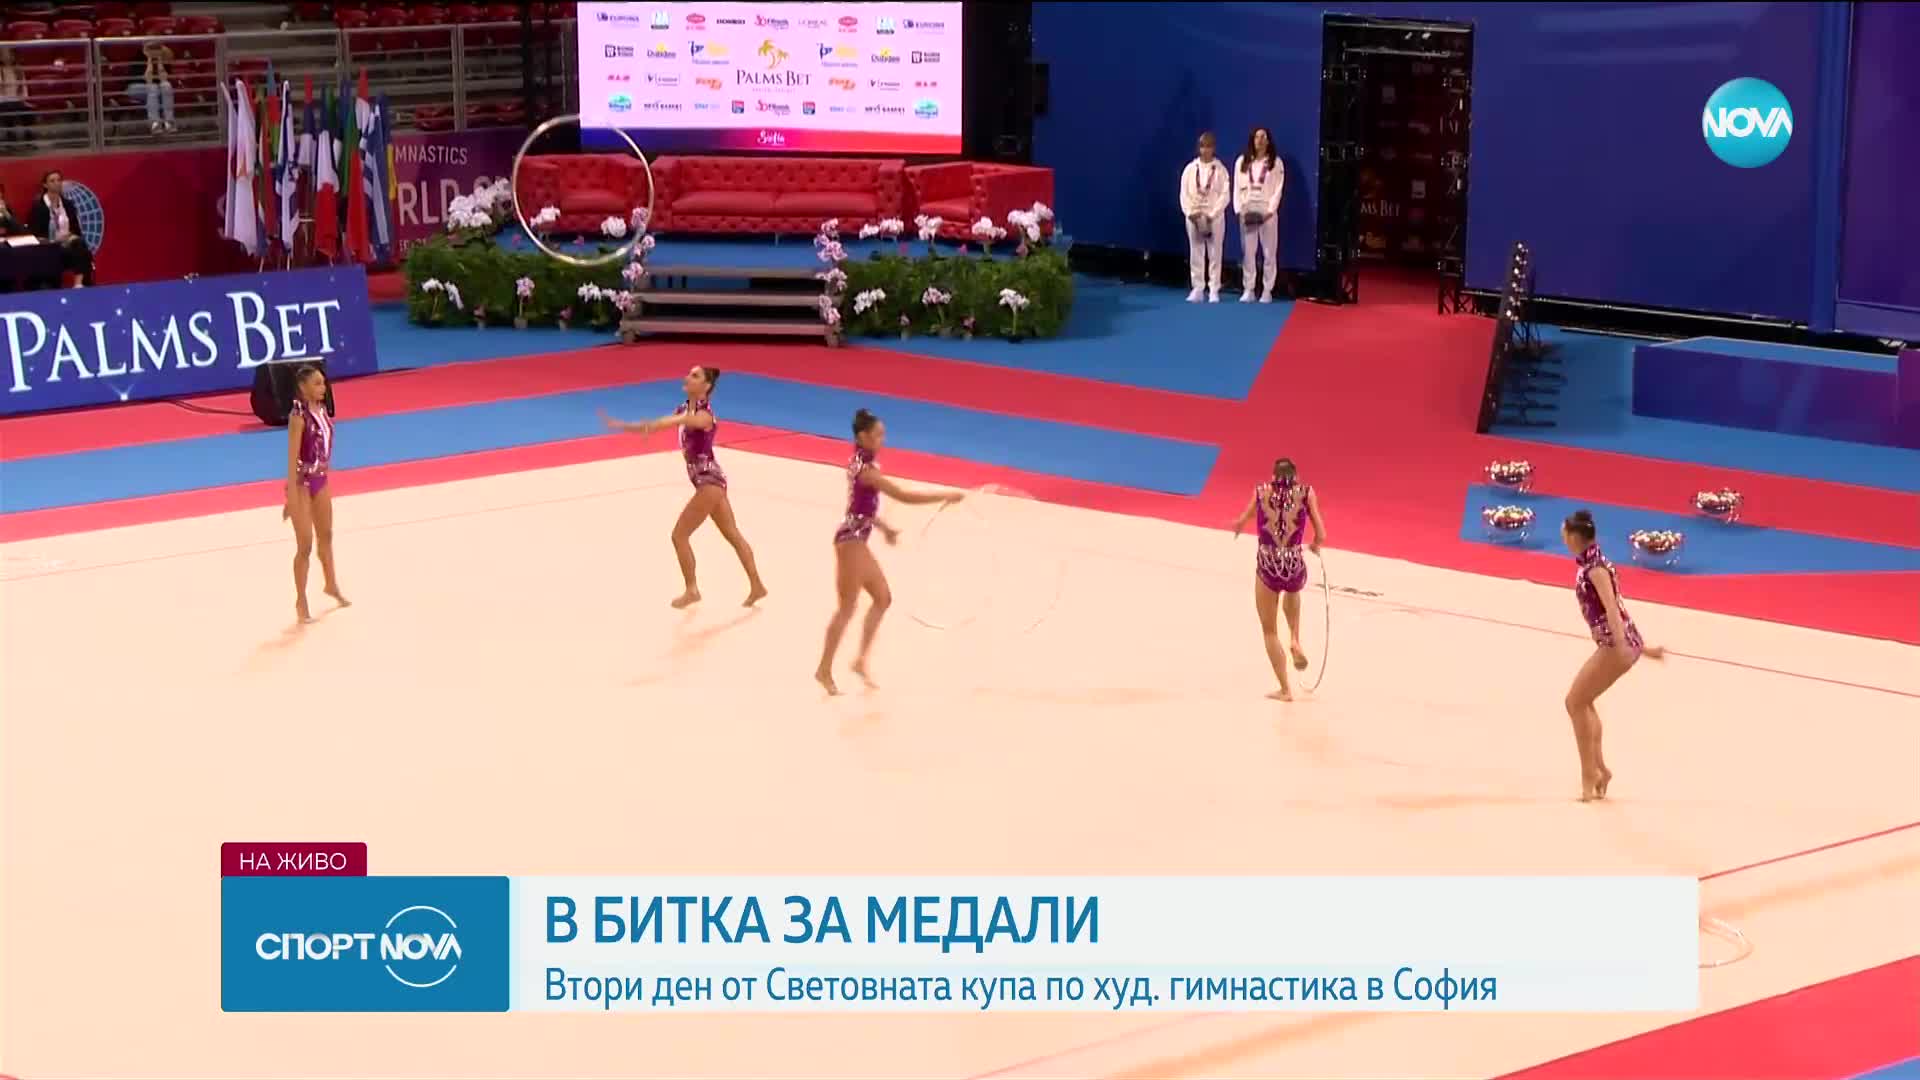 Втори ден от Световната купа по художествена гимнастика в София